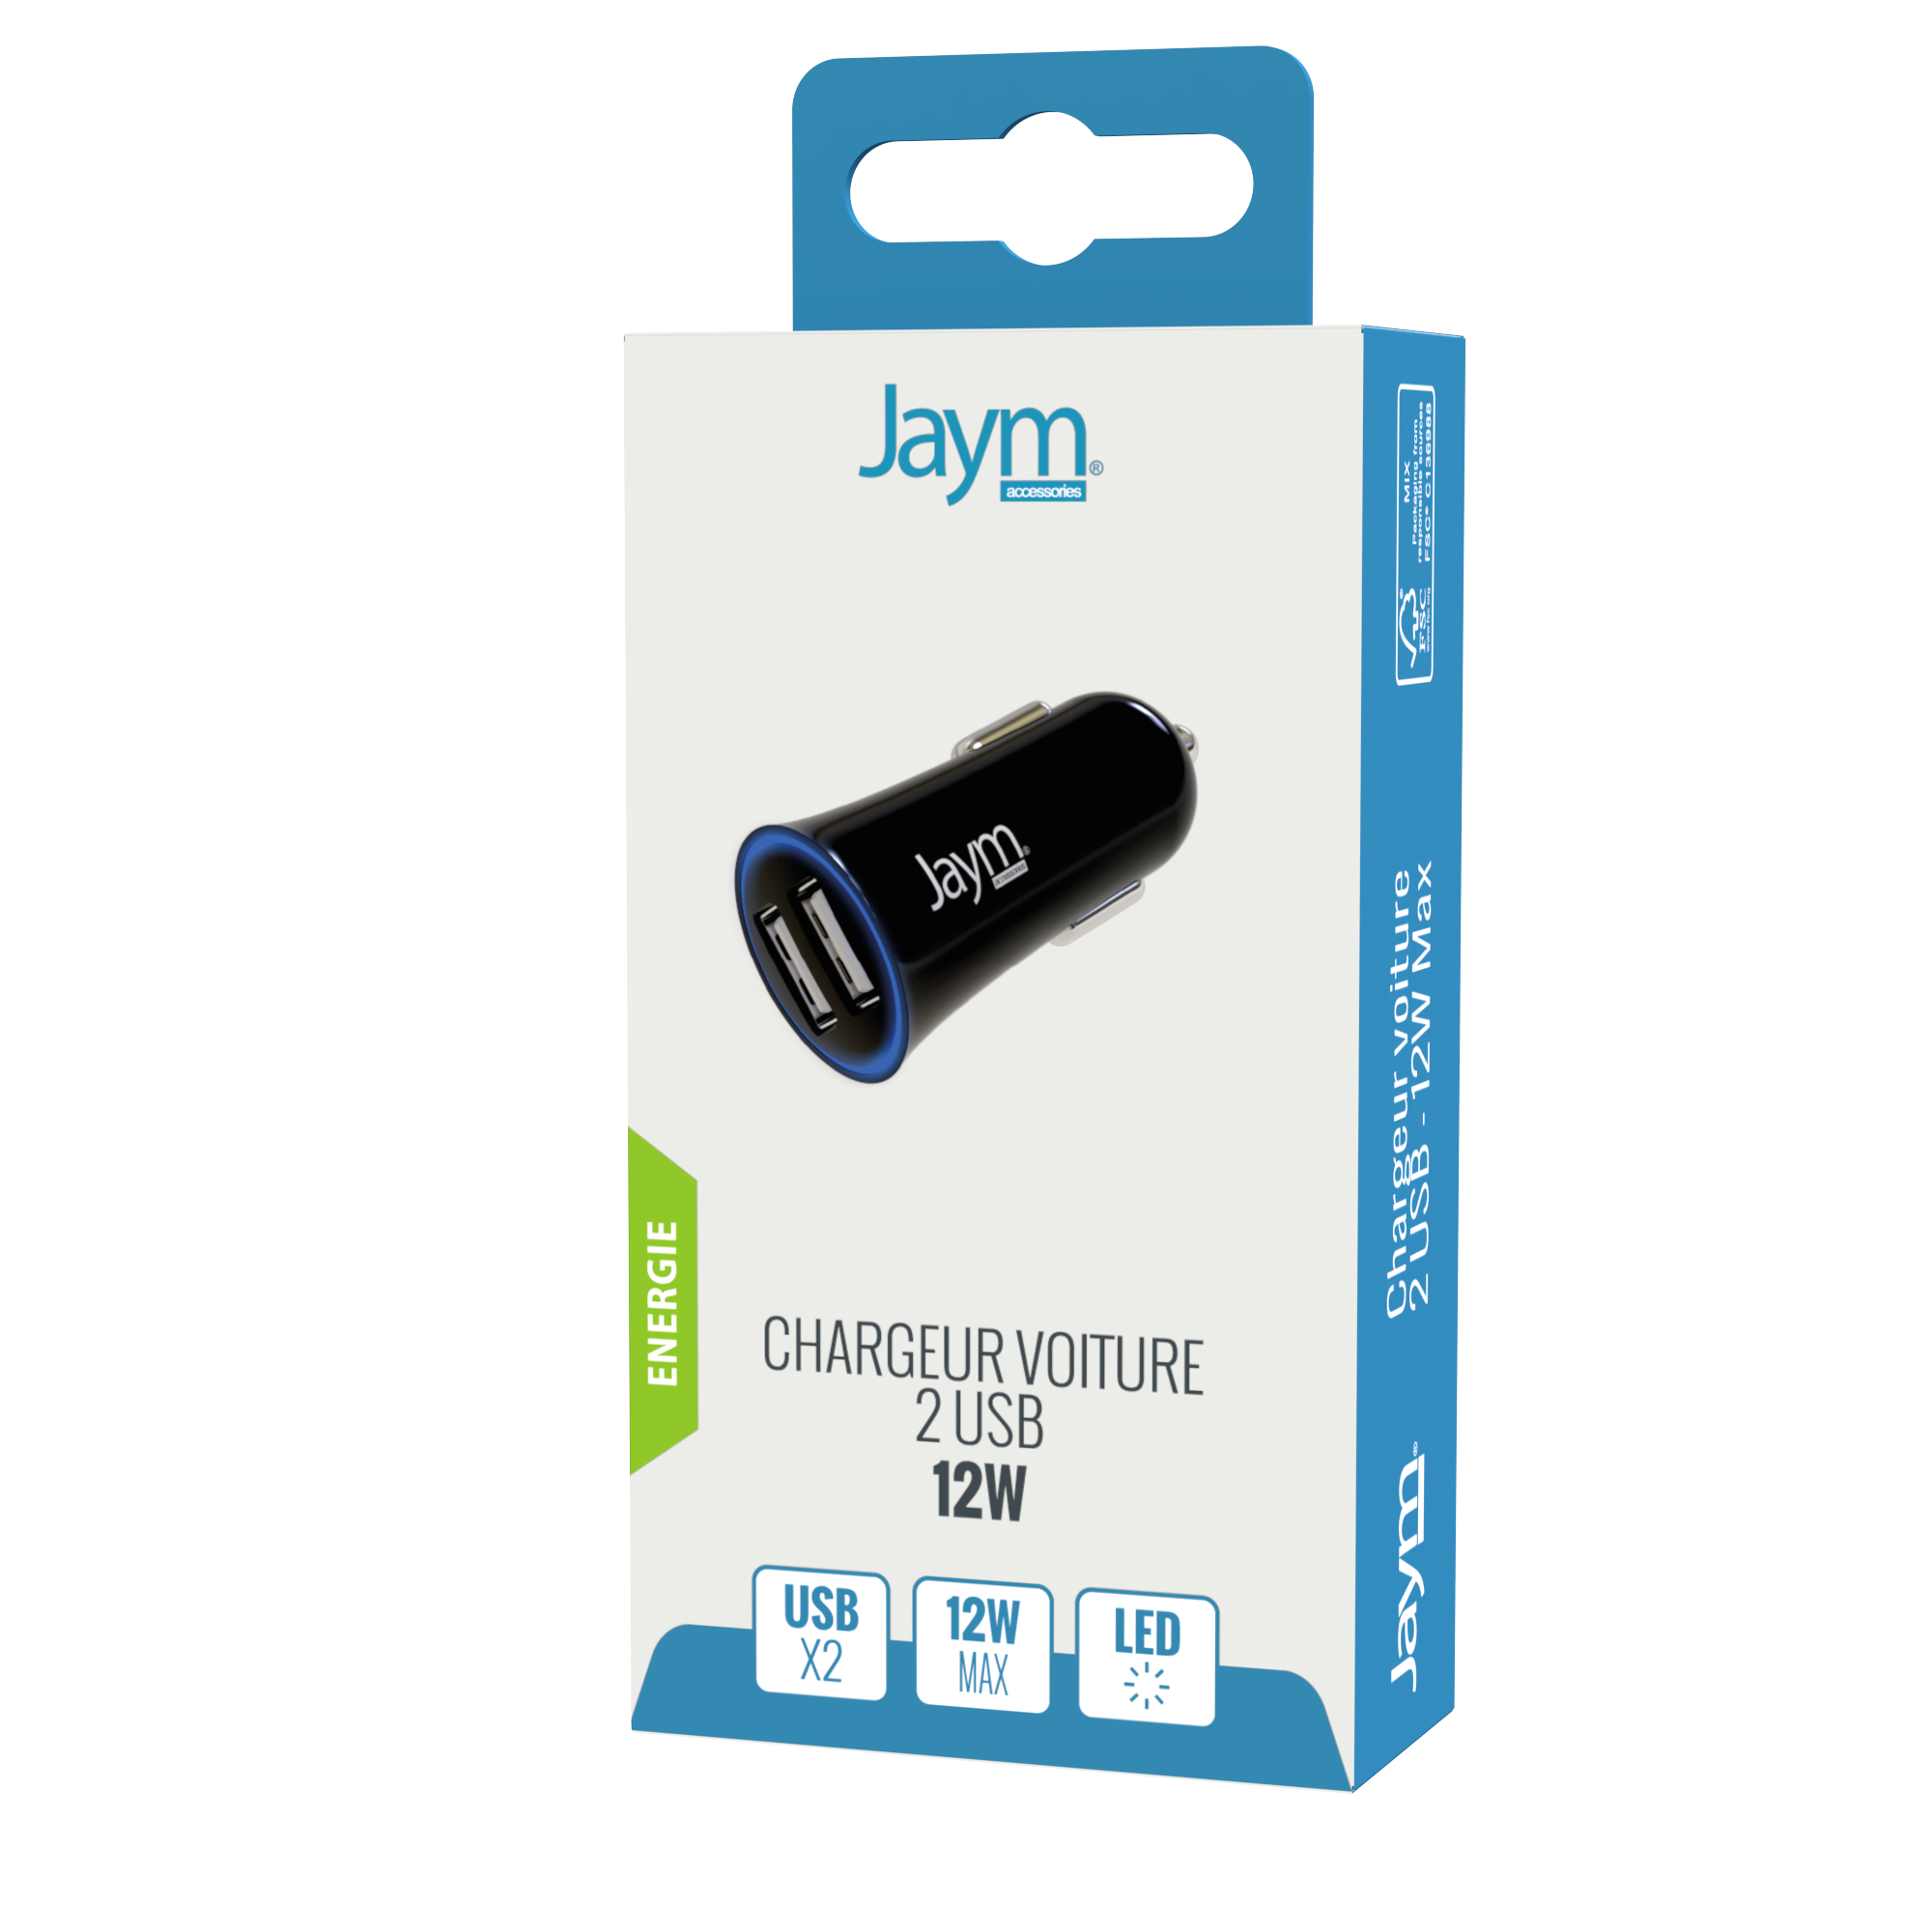 JAYM - Chargeur allume cigare pour voiture - 1 USB + câble USB-C vers USB-C  - blanc